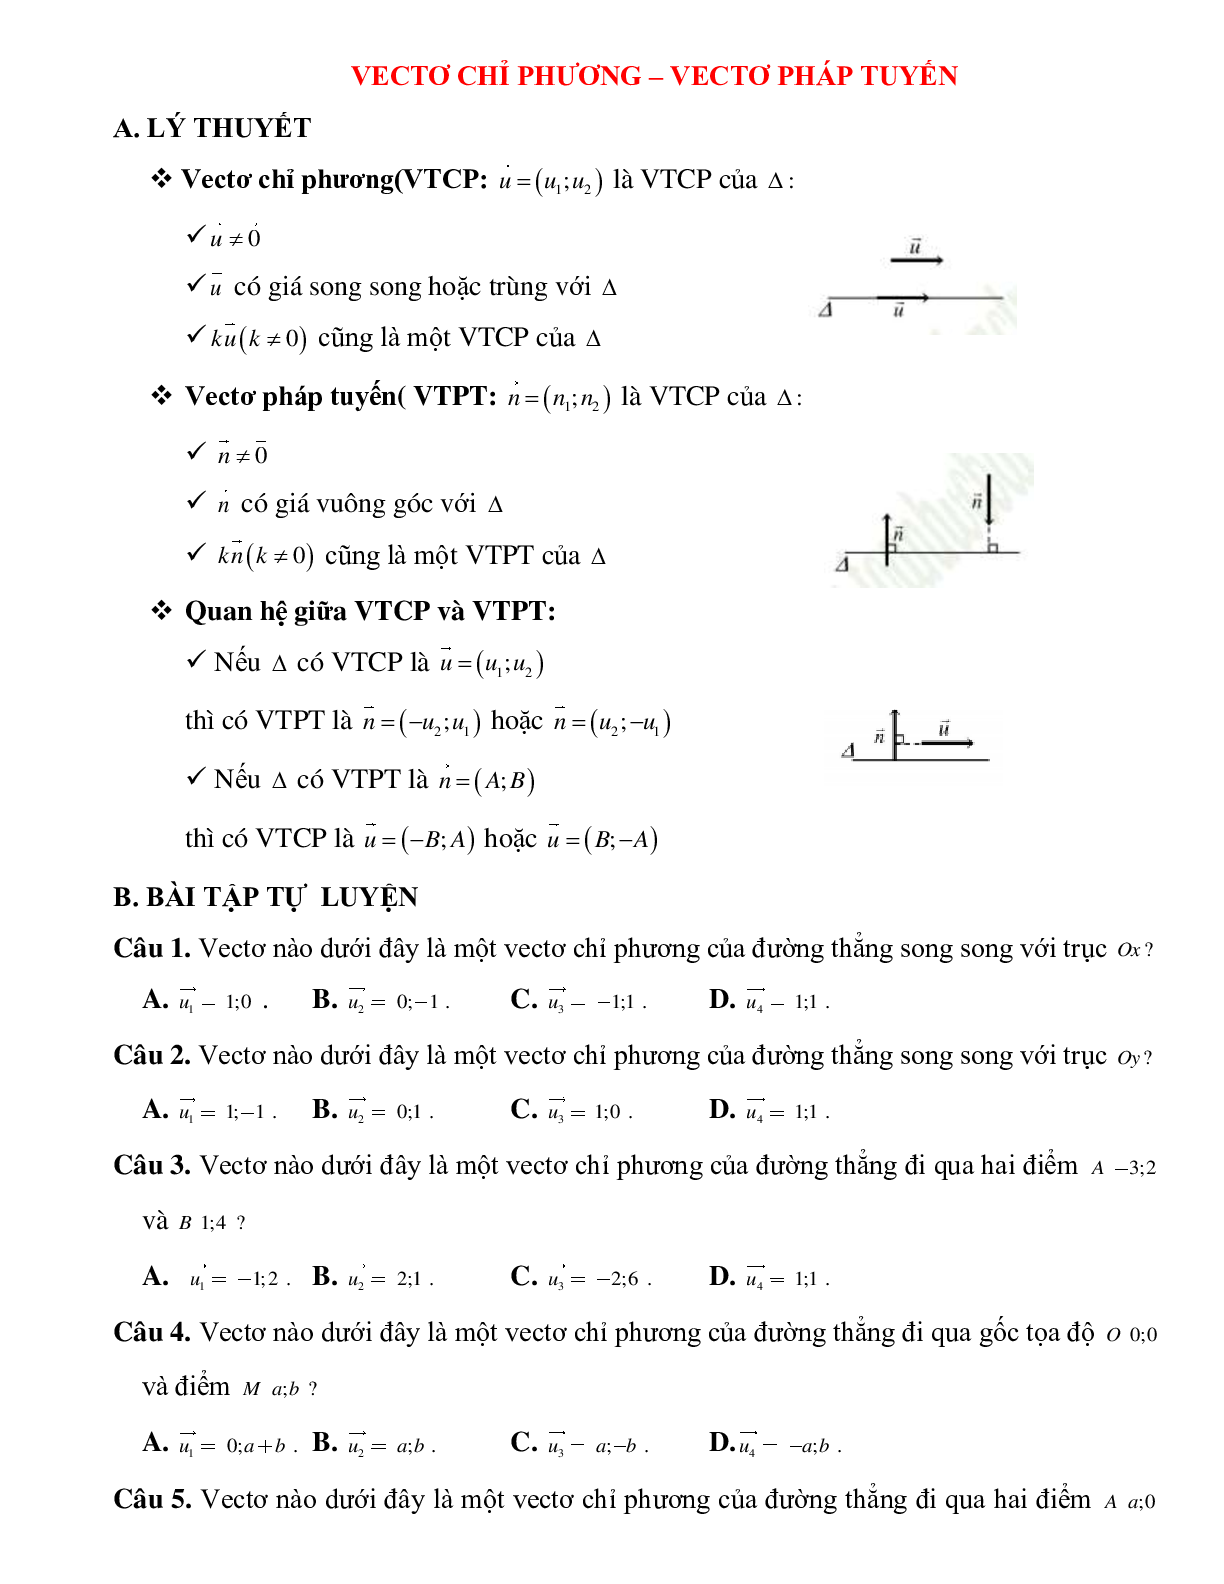 Lý thuyết, bài bác luyện về Vectơ chỉ phương - Vectơ pháp tuyến của phương trình đường thẳng liền mạch tinh lọc (trang 1)